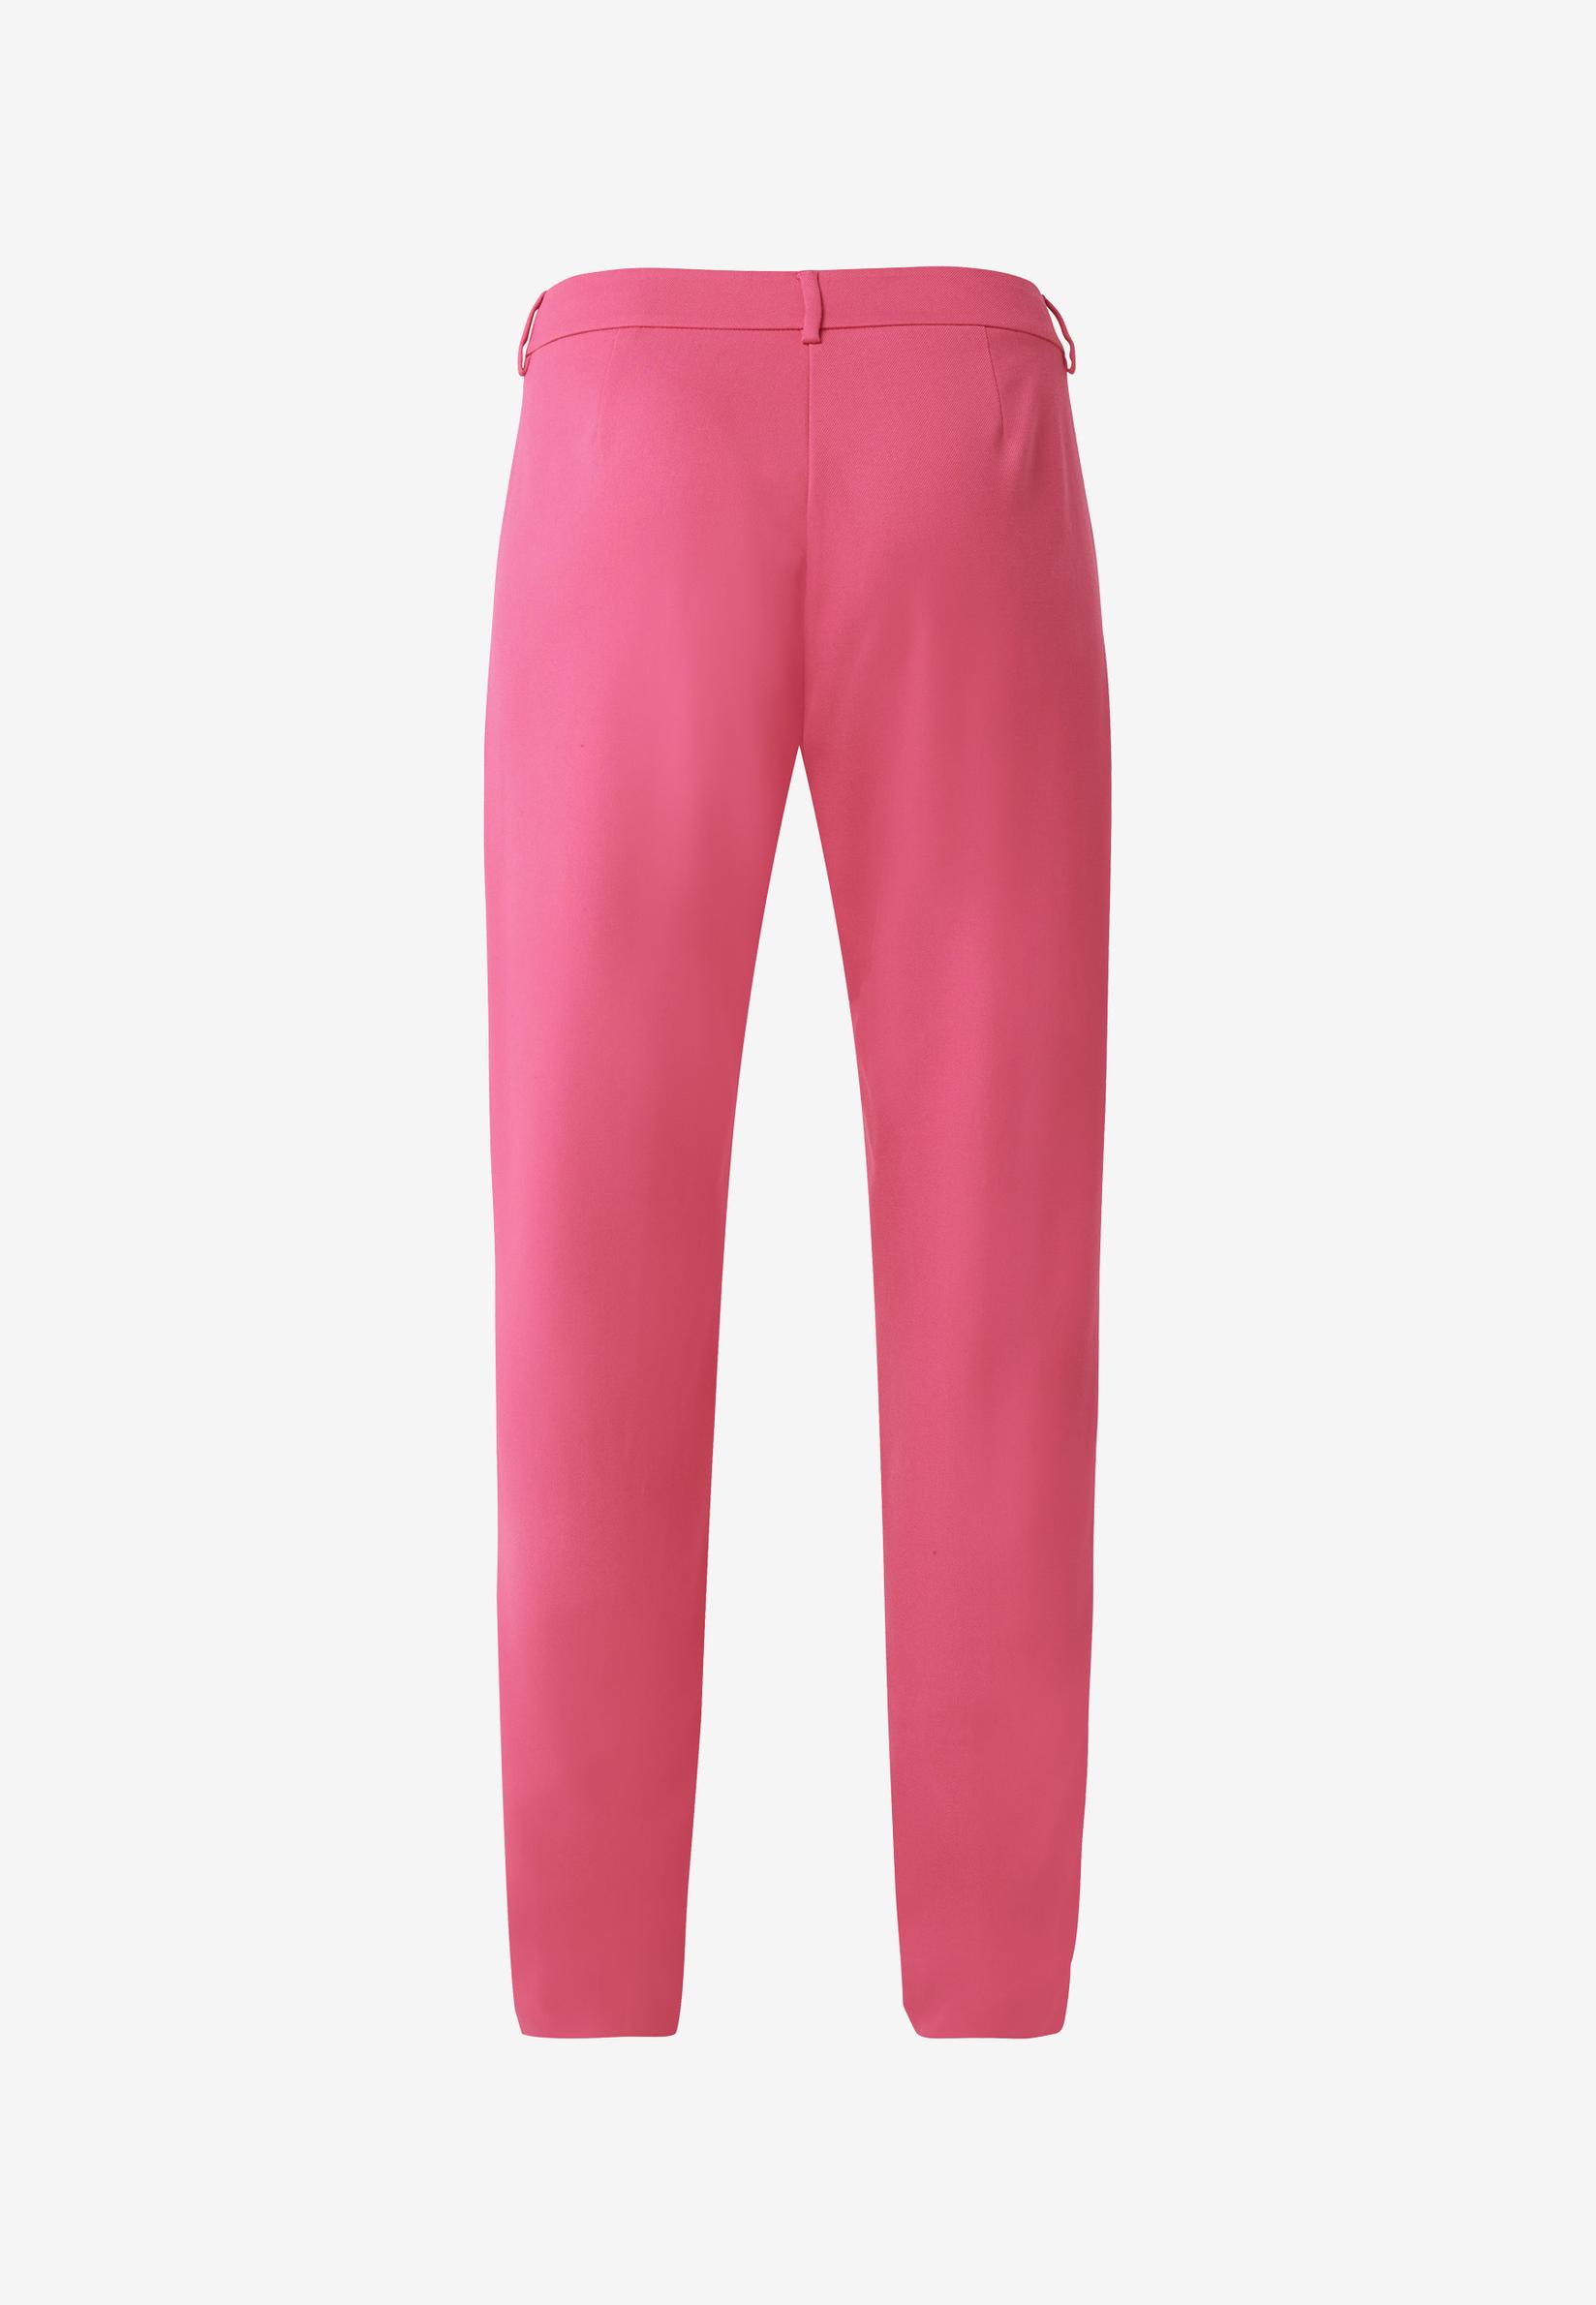 Selected image for MEXX Ženske ravne pantalone roze